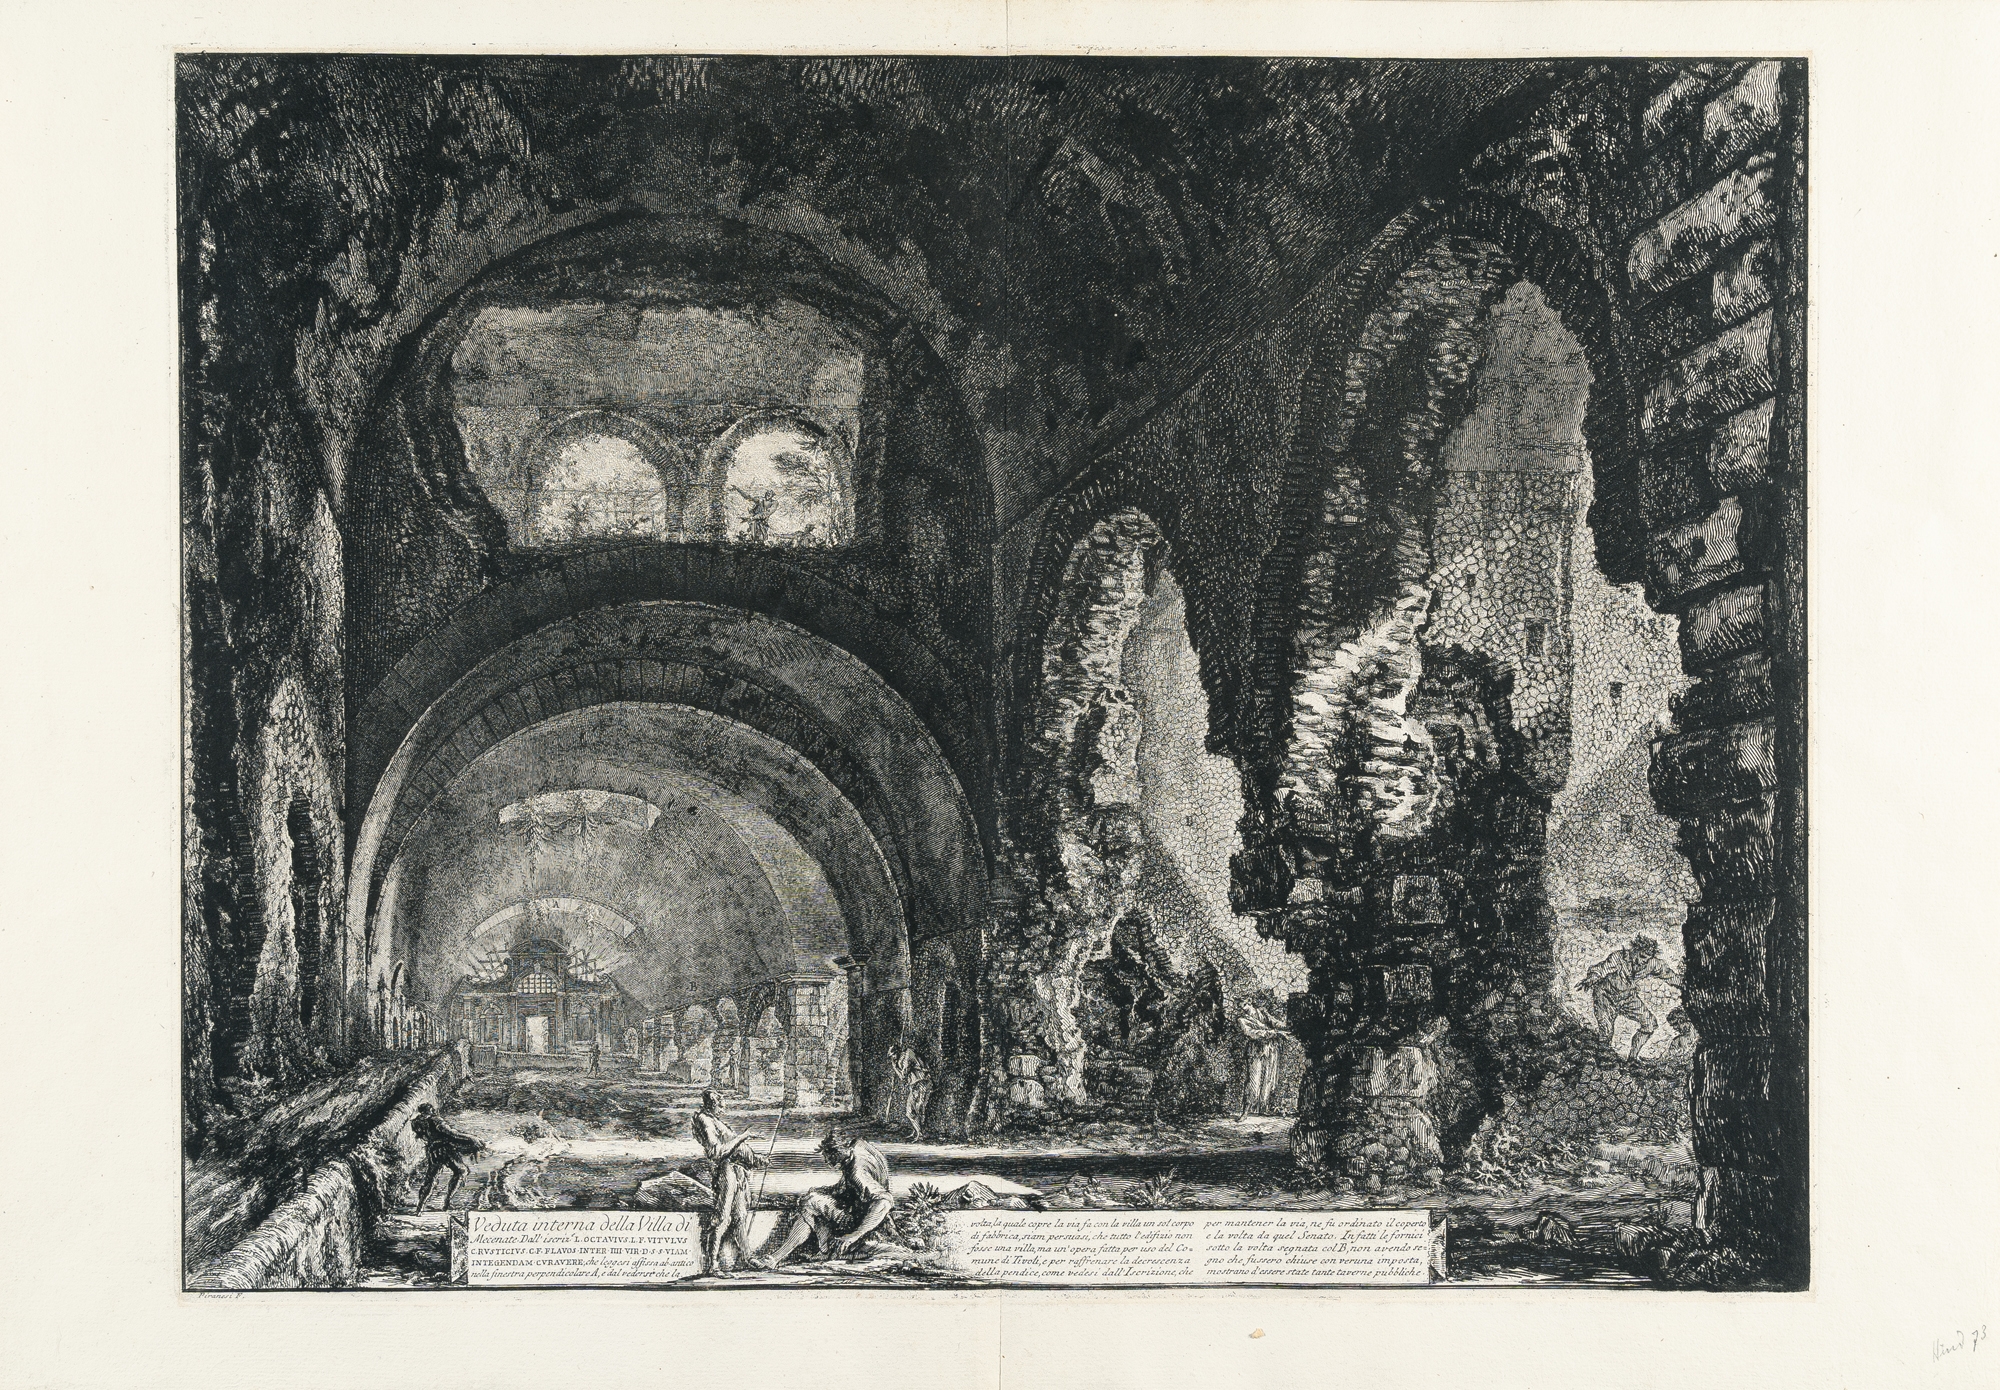 Veduta interna della Villa di Mecenate by Giovanni Battista Piranesi, 1764